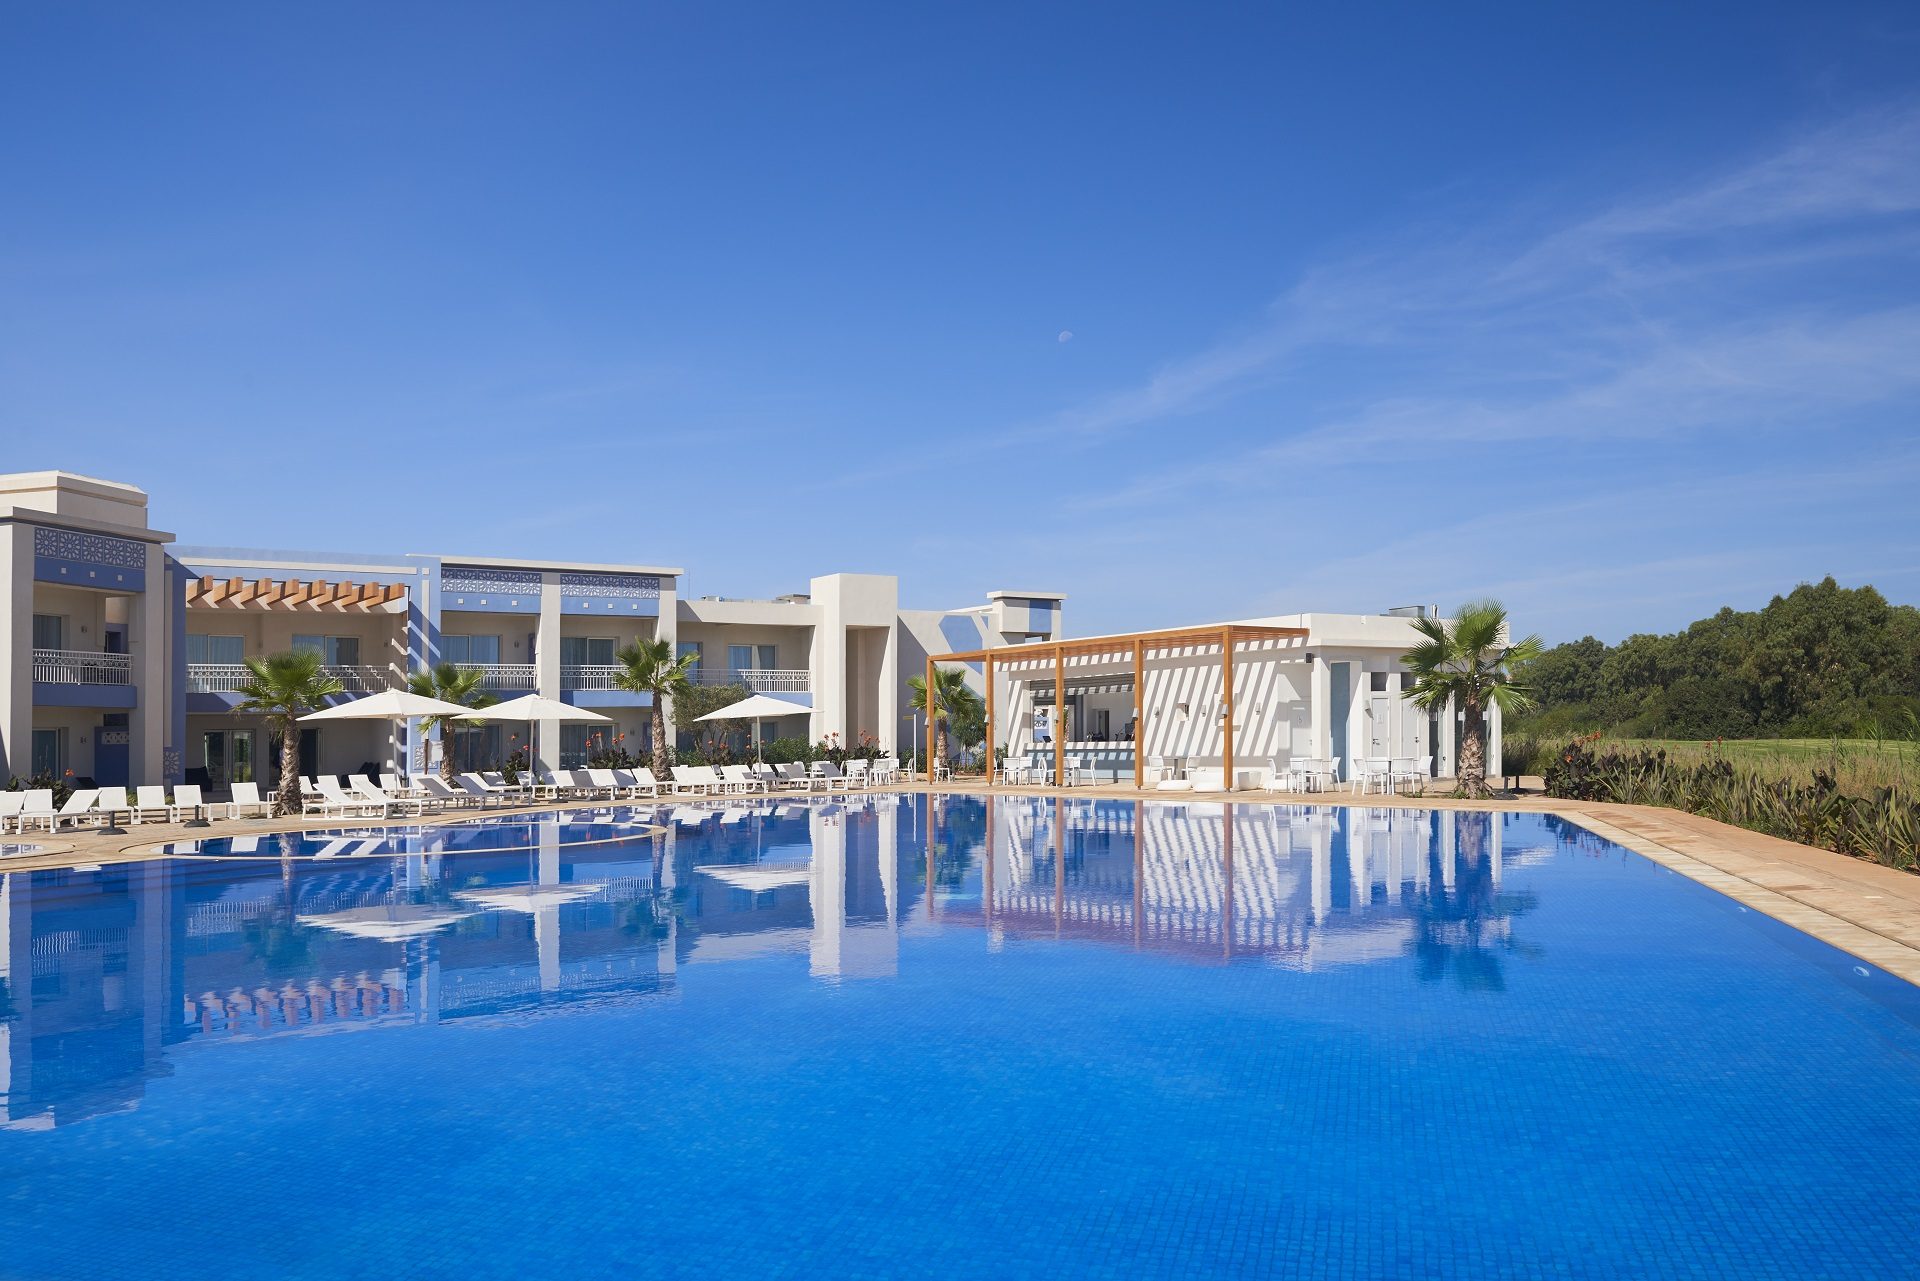 Saidia, wakacje w Maroku, hotele z basenami, wakacje w Afryce, rodzinne wczasy, urlop w all inclusive